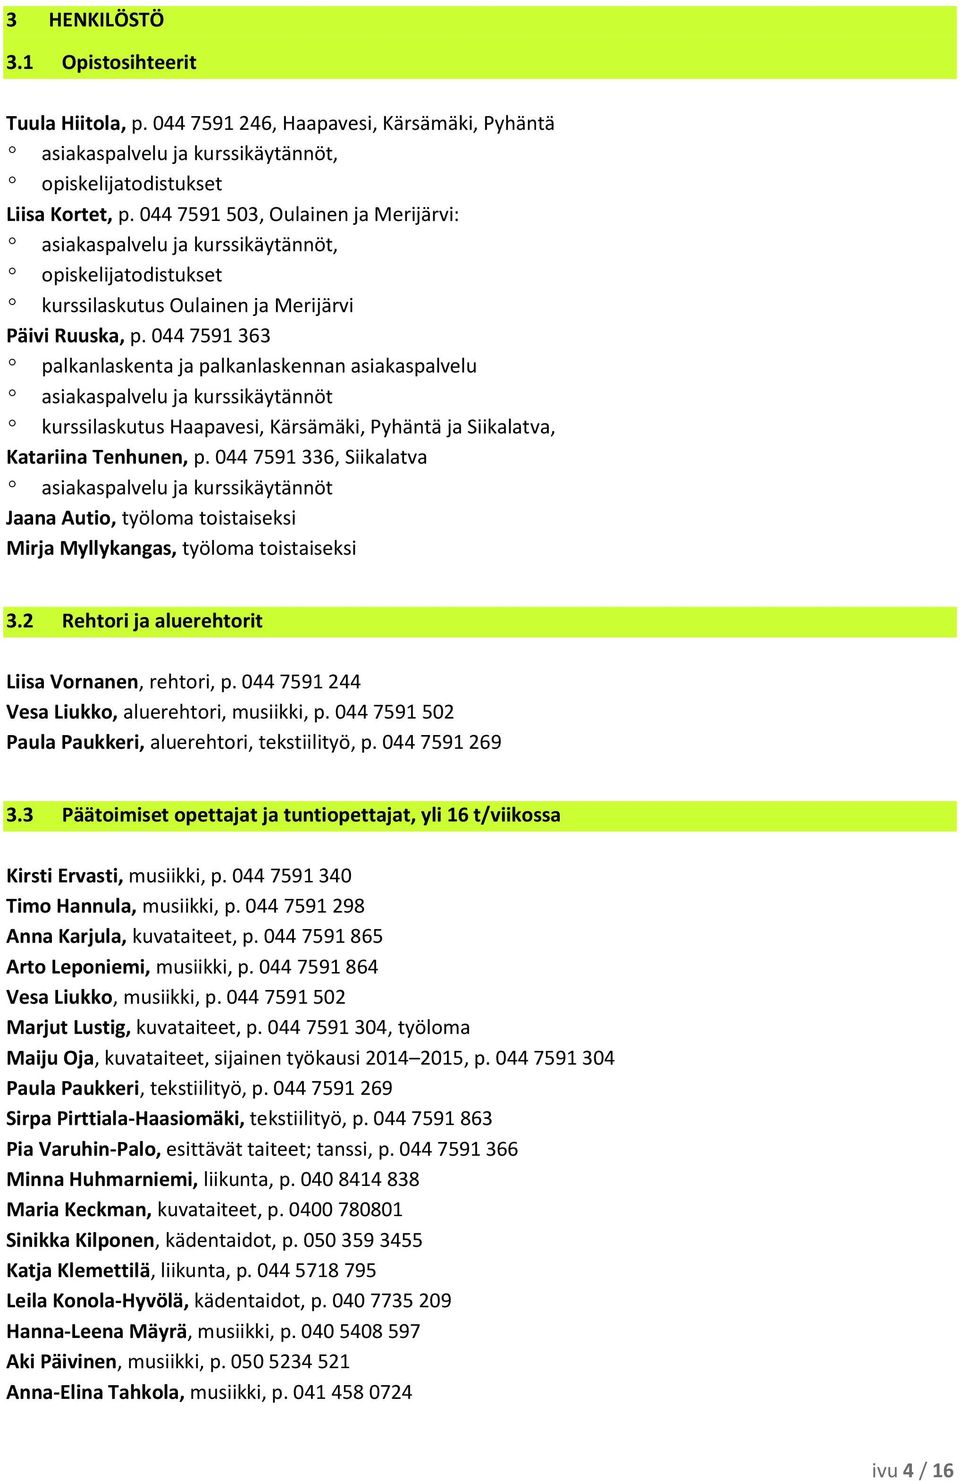 044 7591 363 º palkanlaskenta ja palkanlaskennan asiakaspalvelu º asiakaspalvelu ja kurssikäytännöt º kurssilaskutus Haapavesi, Kärsämäki, Pyhäntä ja Siikalatva, Katariina Tenhunen, p.